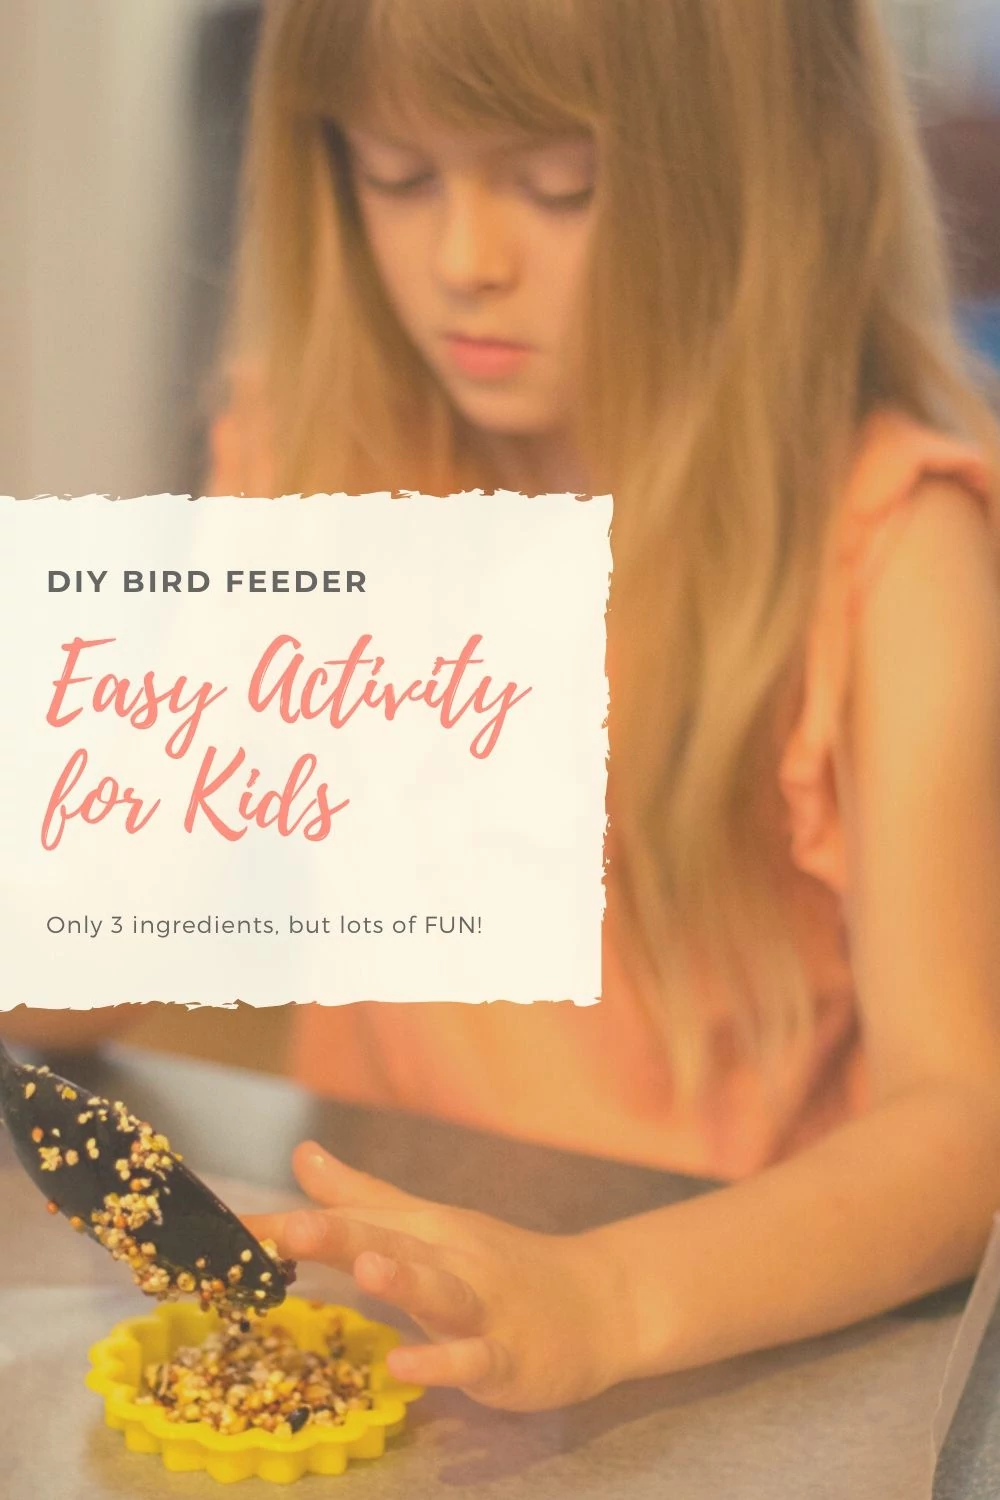 Easy activity for kids homemade bird feeder